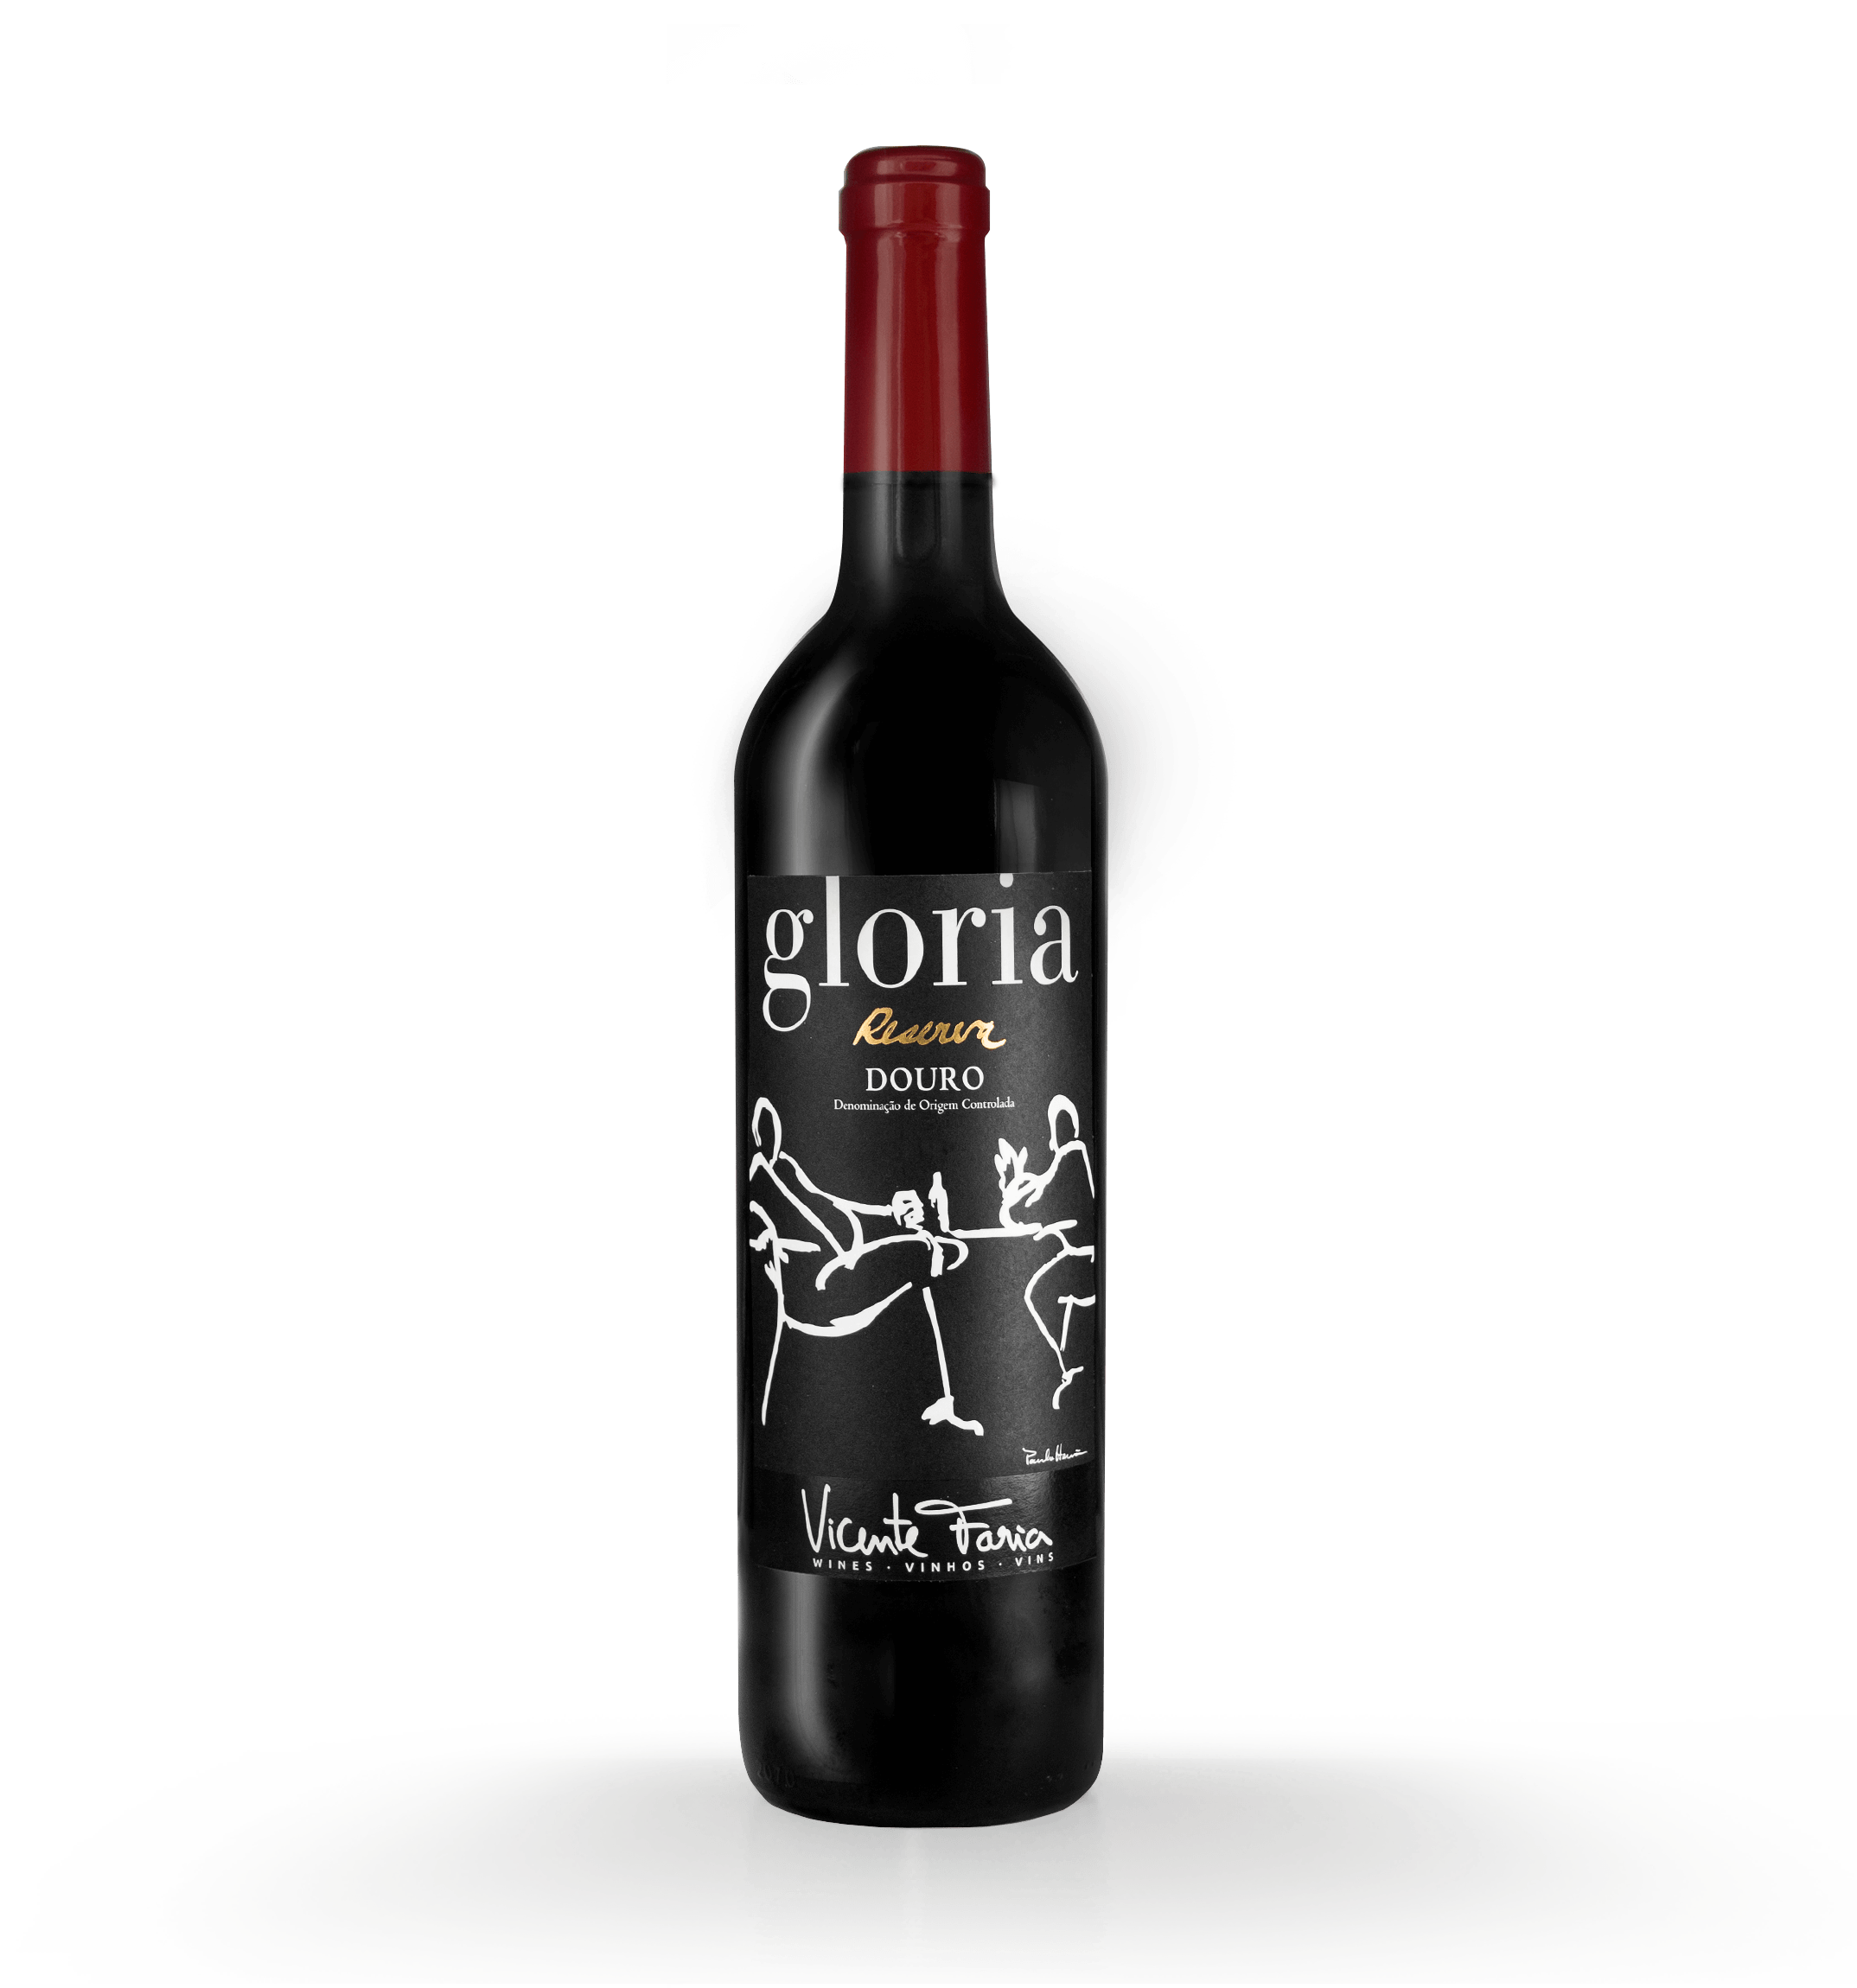 One bottle of the Portuguese wine Gloria Douro Reserva